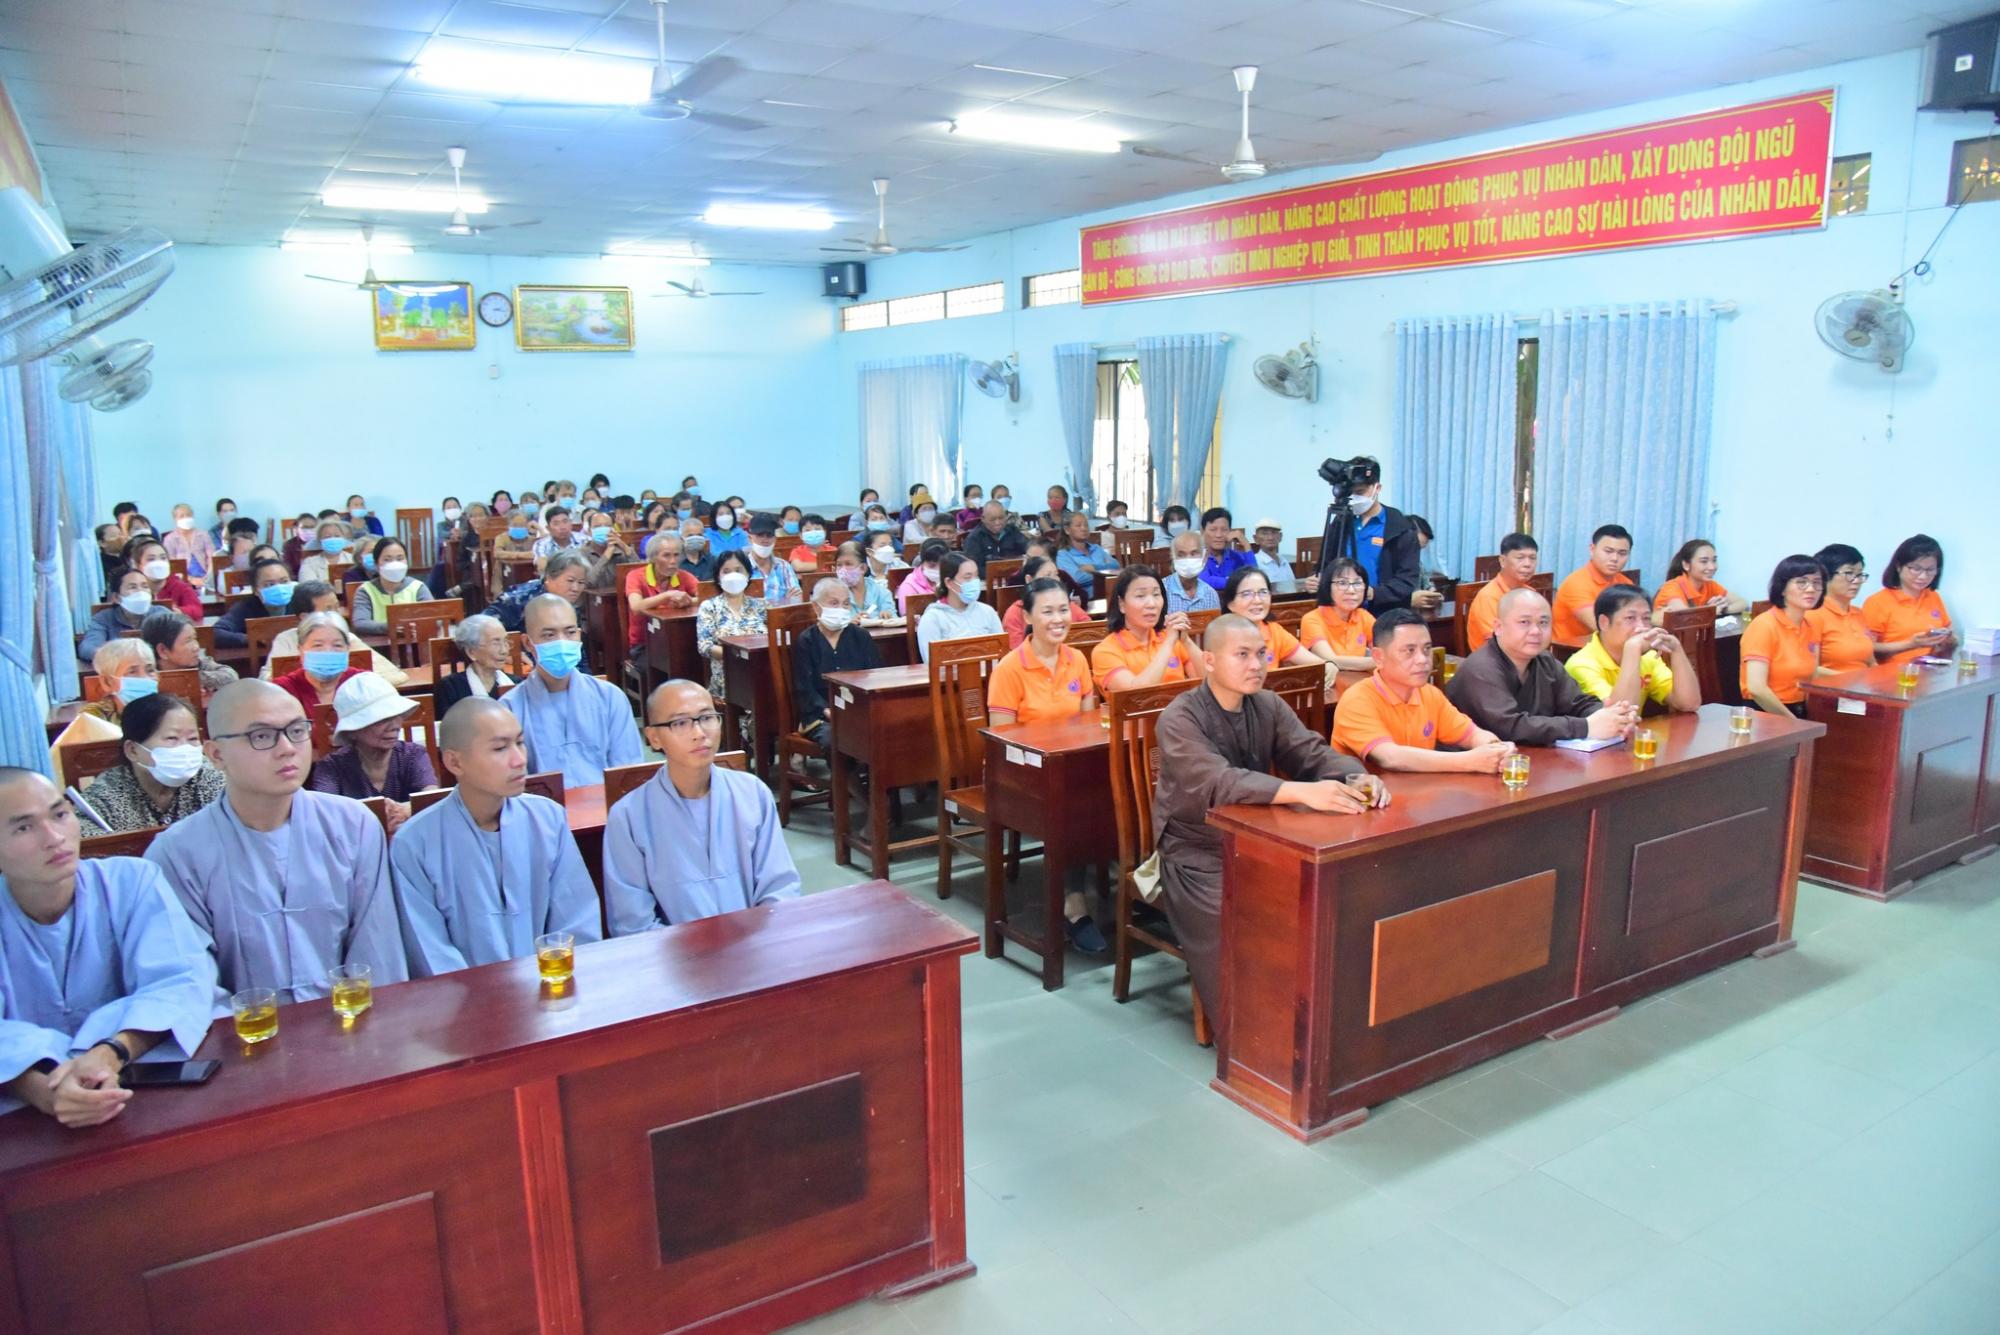 Quỹ Đạo Phật Ngày Nay trao 300 phần quà cho các hộ khó khăn tại xã Phước Vĩnh An huyện Củ Chi